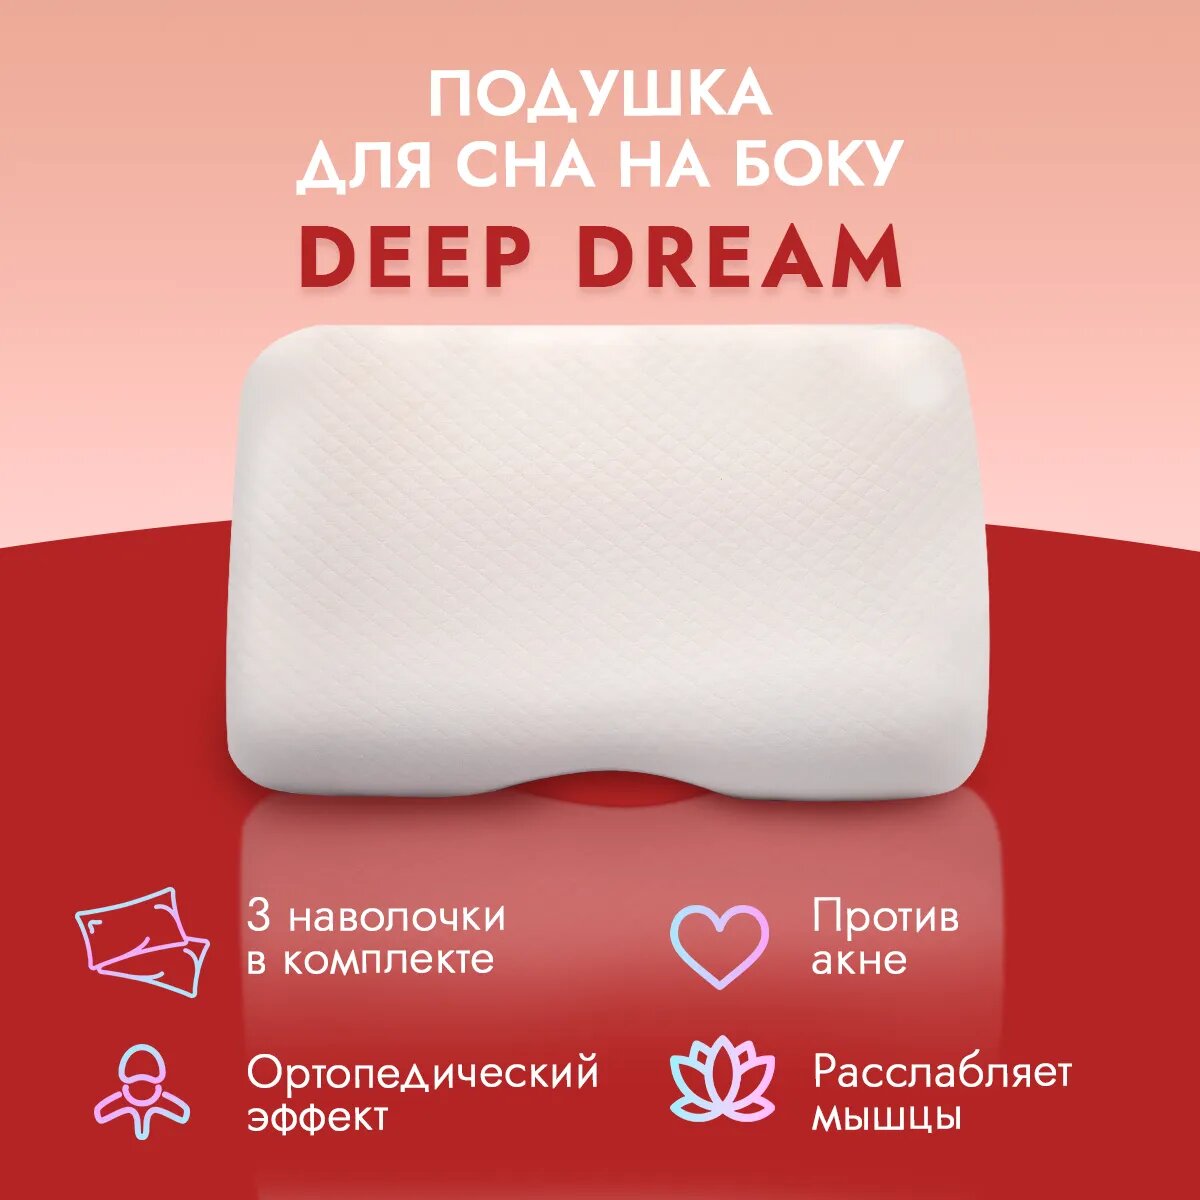 Анатомическая подушка для сна под плечо LoliDream Deep Dream + 3 сменные наволочки чехла в комплекте